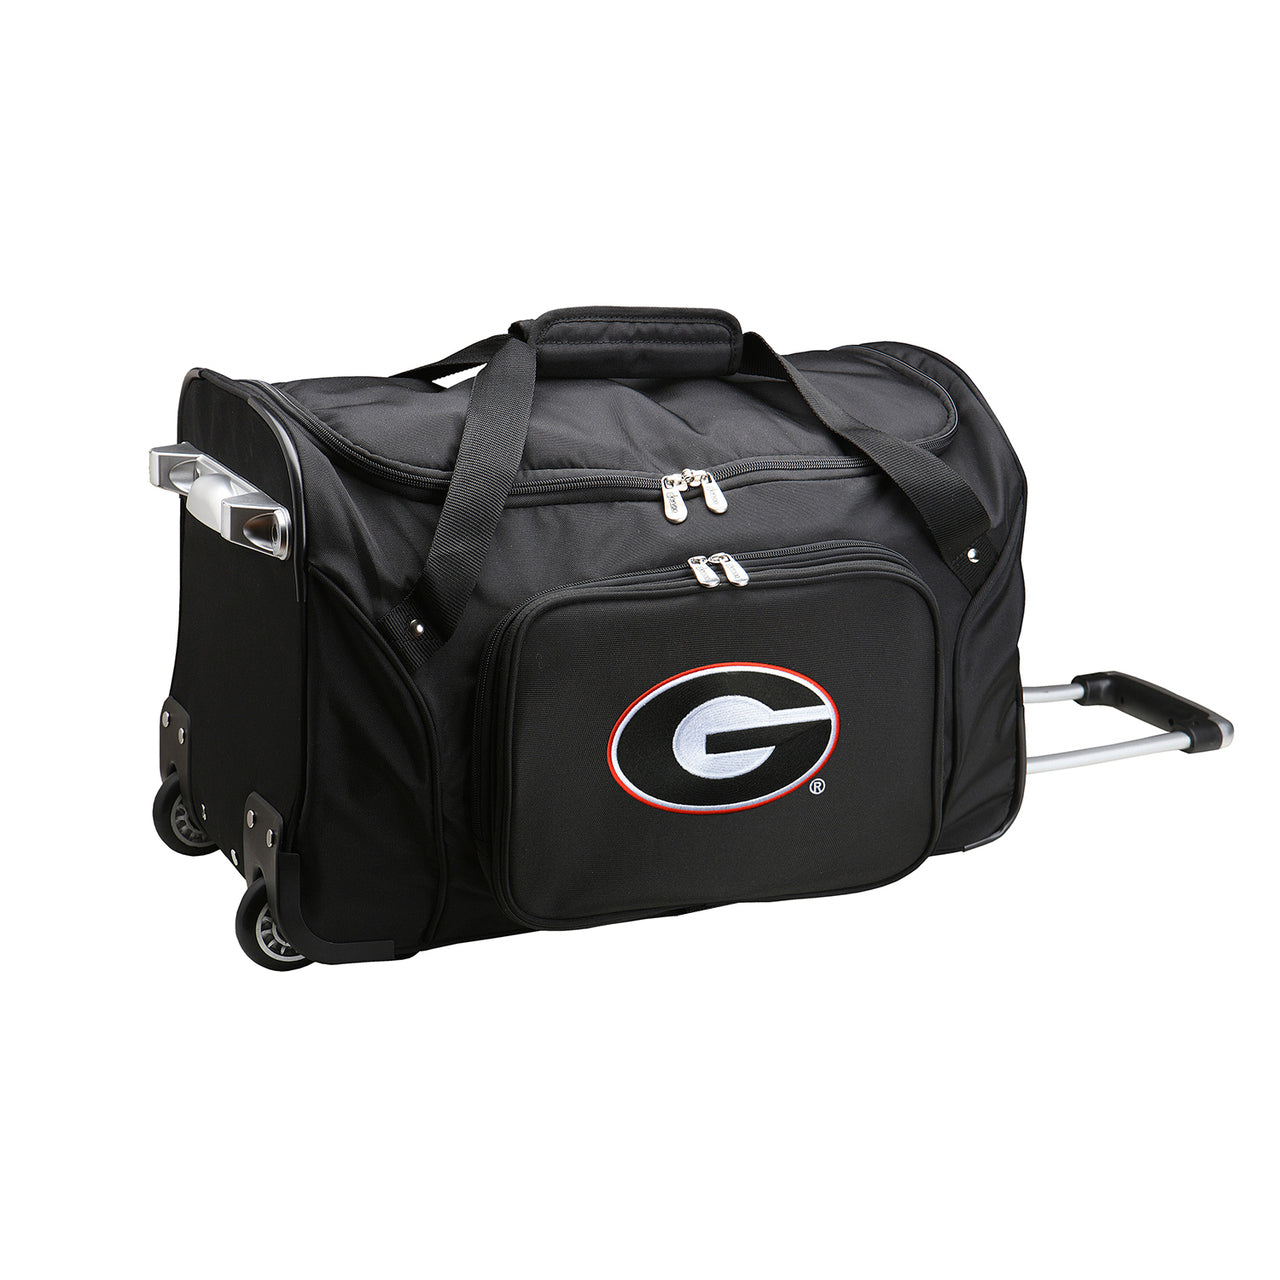 Georgia Bulldogs Luggage | Georgia Bulldogs Wheeled Carry On Luggage